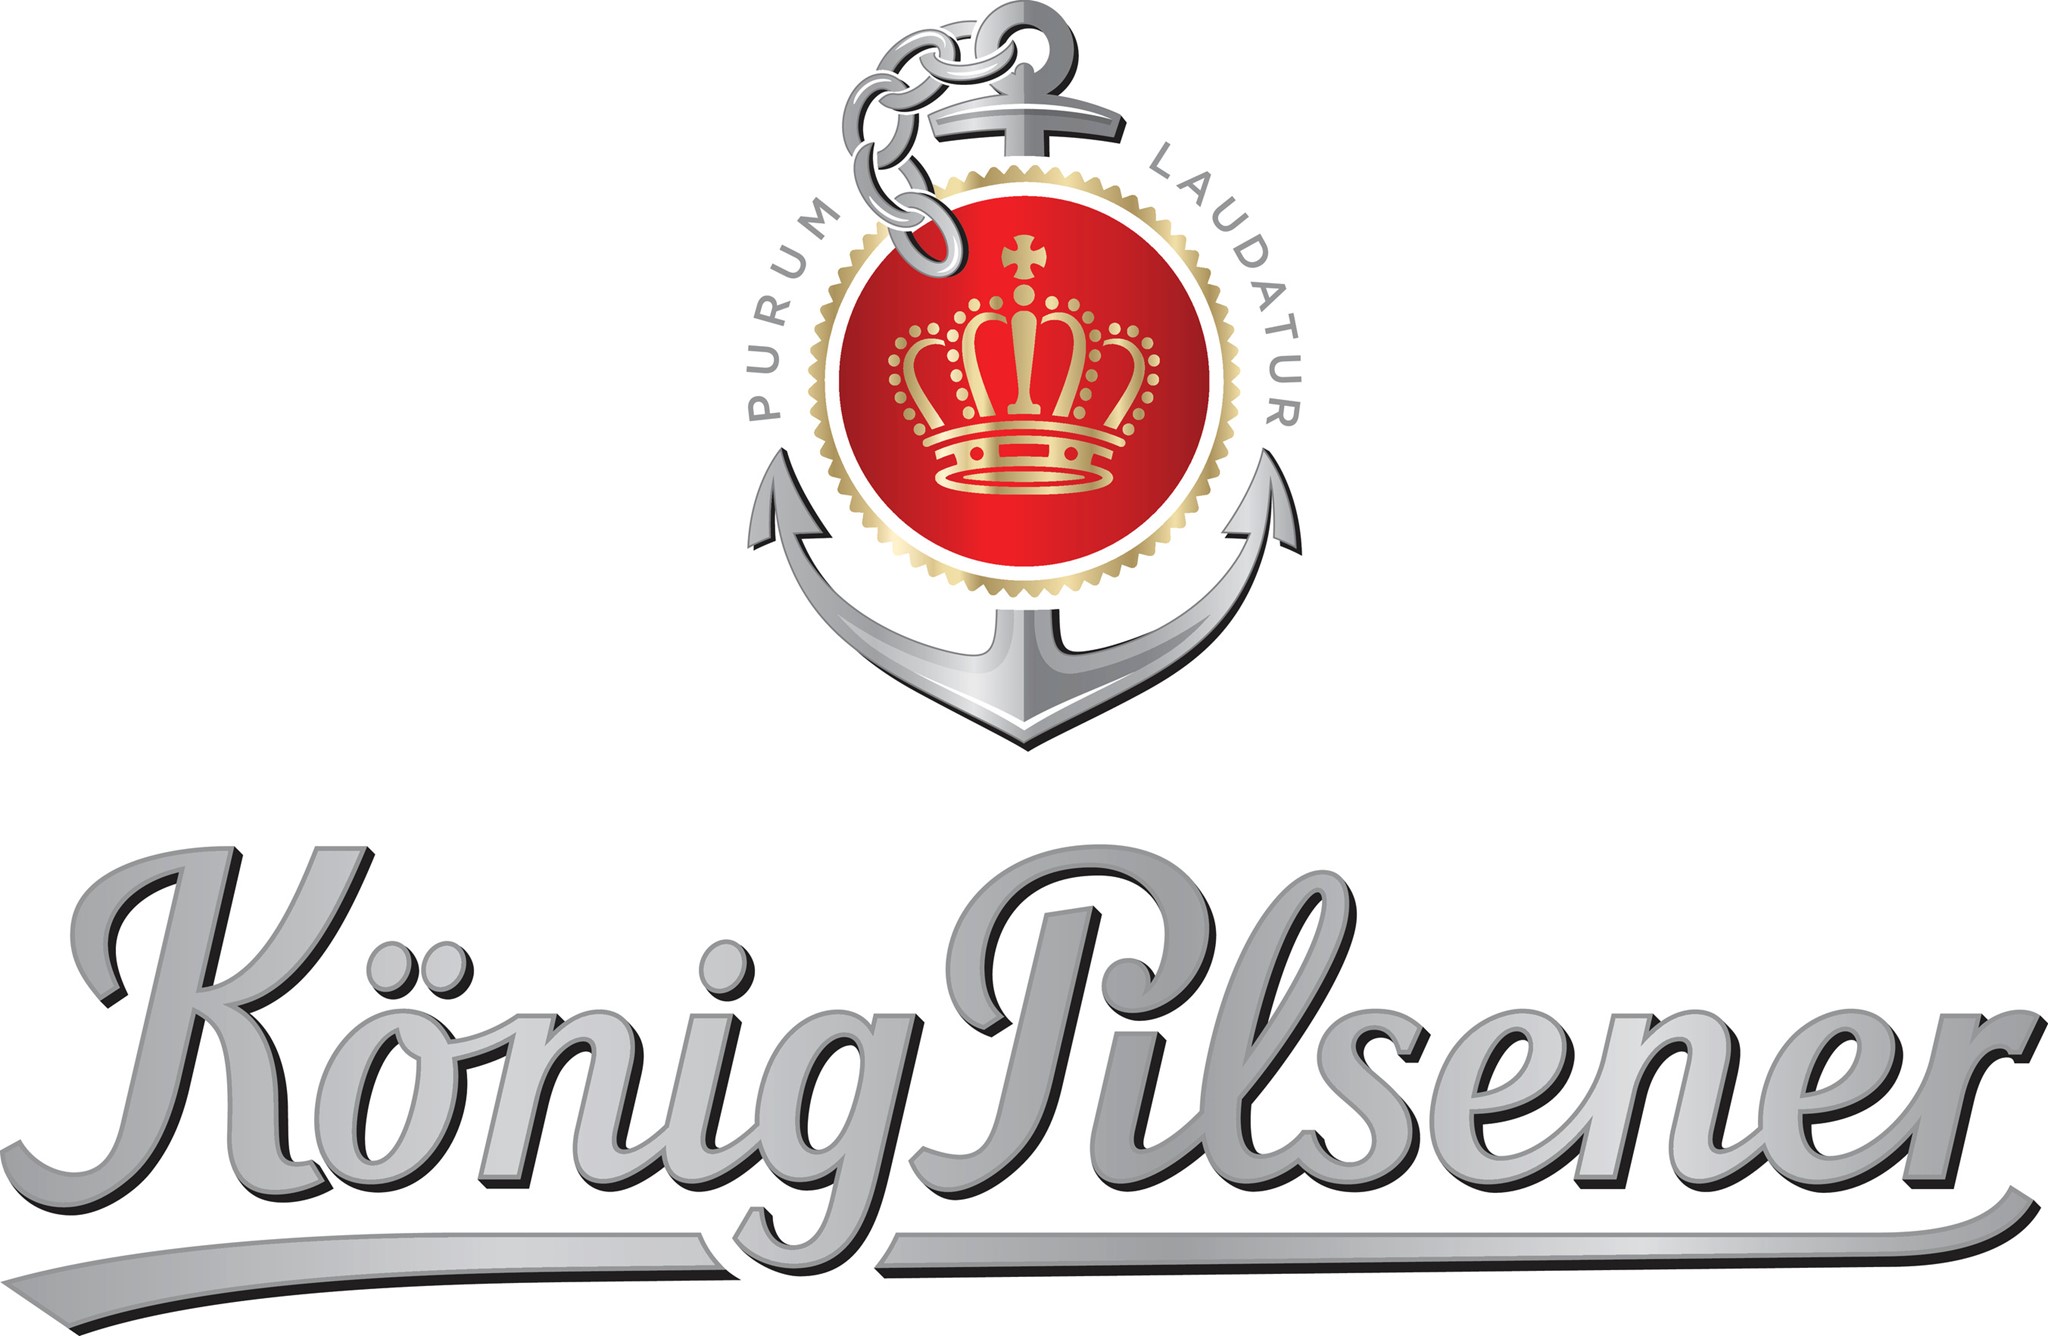 Bilder für Hersteller König Brauerei GmbH